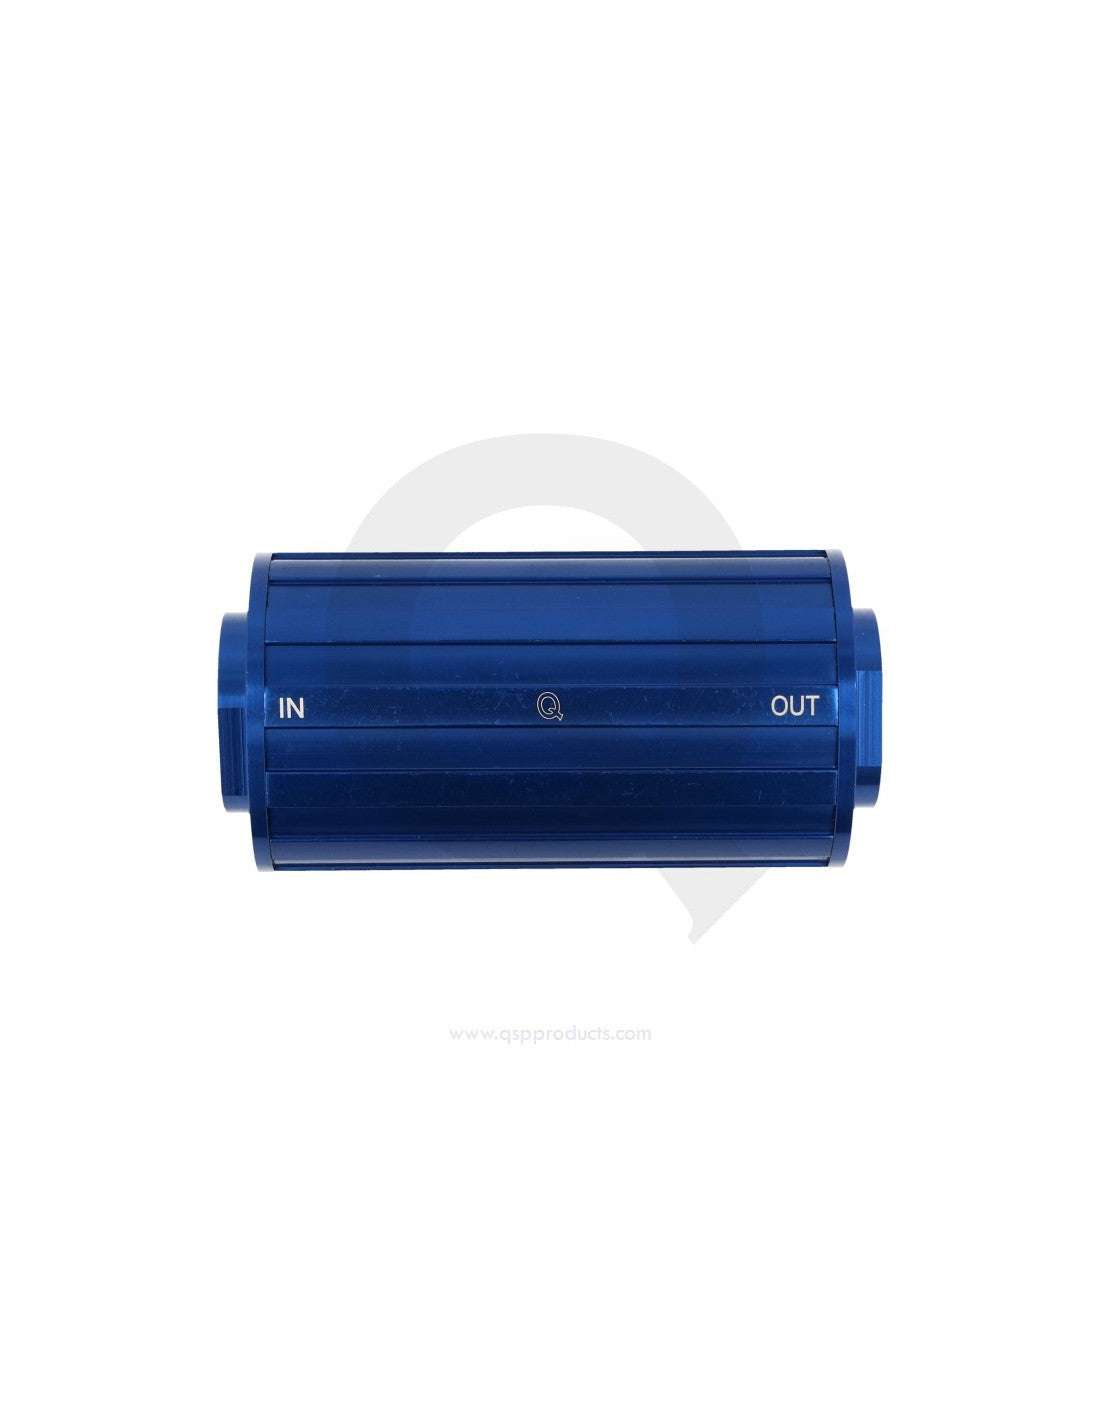 QSP QGFILTER00202-08 Фільтр (масло, паливо), 60 мікрон, 3/4 (AN8) male, синій Photo-1 